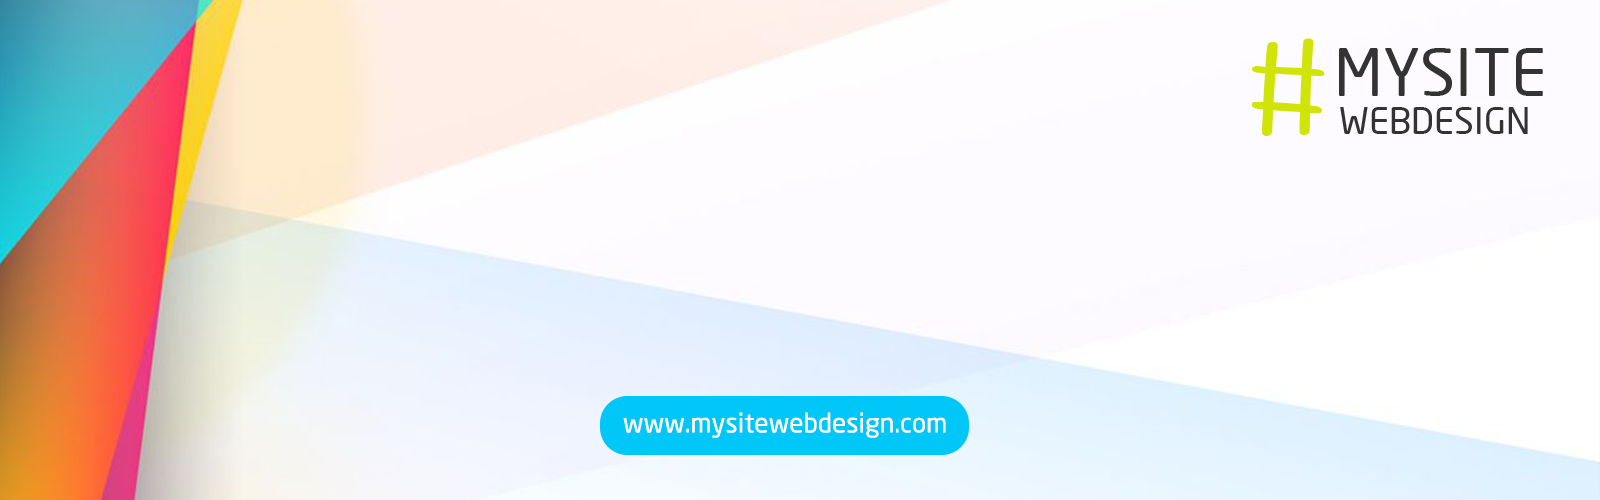 สร้างหน้าเว็บให้ธุรกิจคุณเป็นที่รู้จักอย่างเป็นทางการ ในราคาสบายกระเป๋า ที่ #MysiteWebdesign